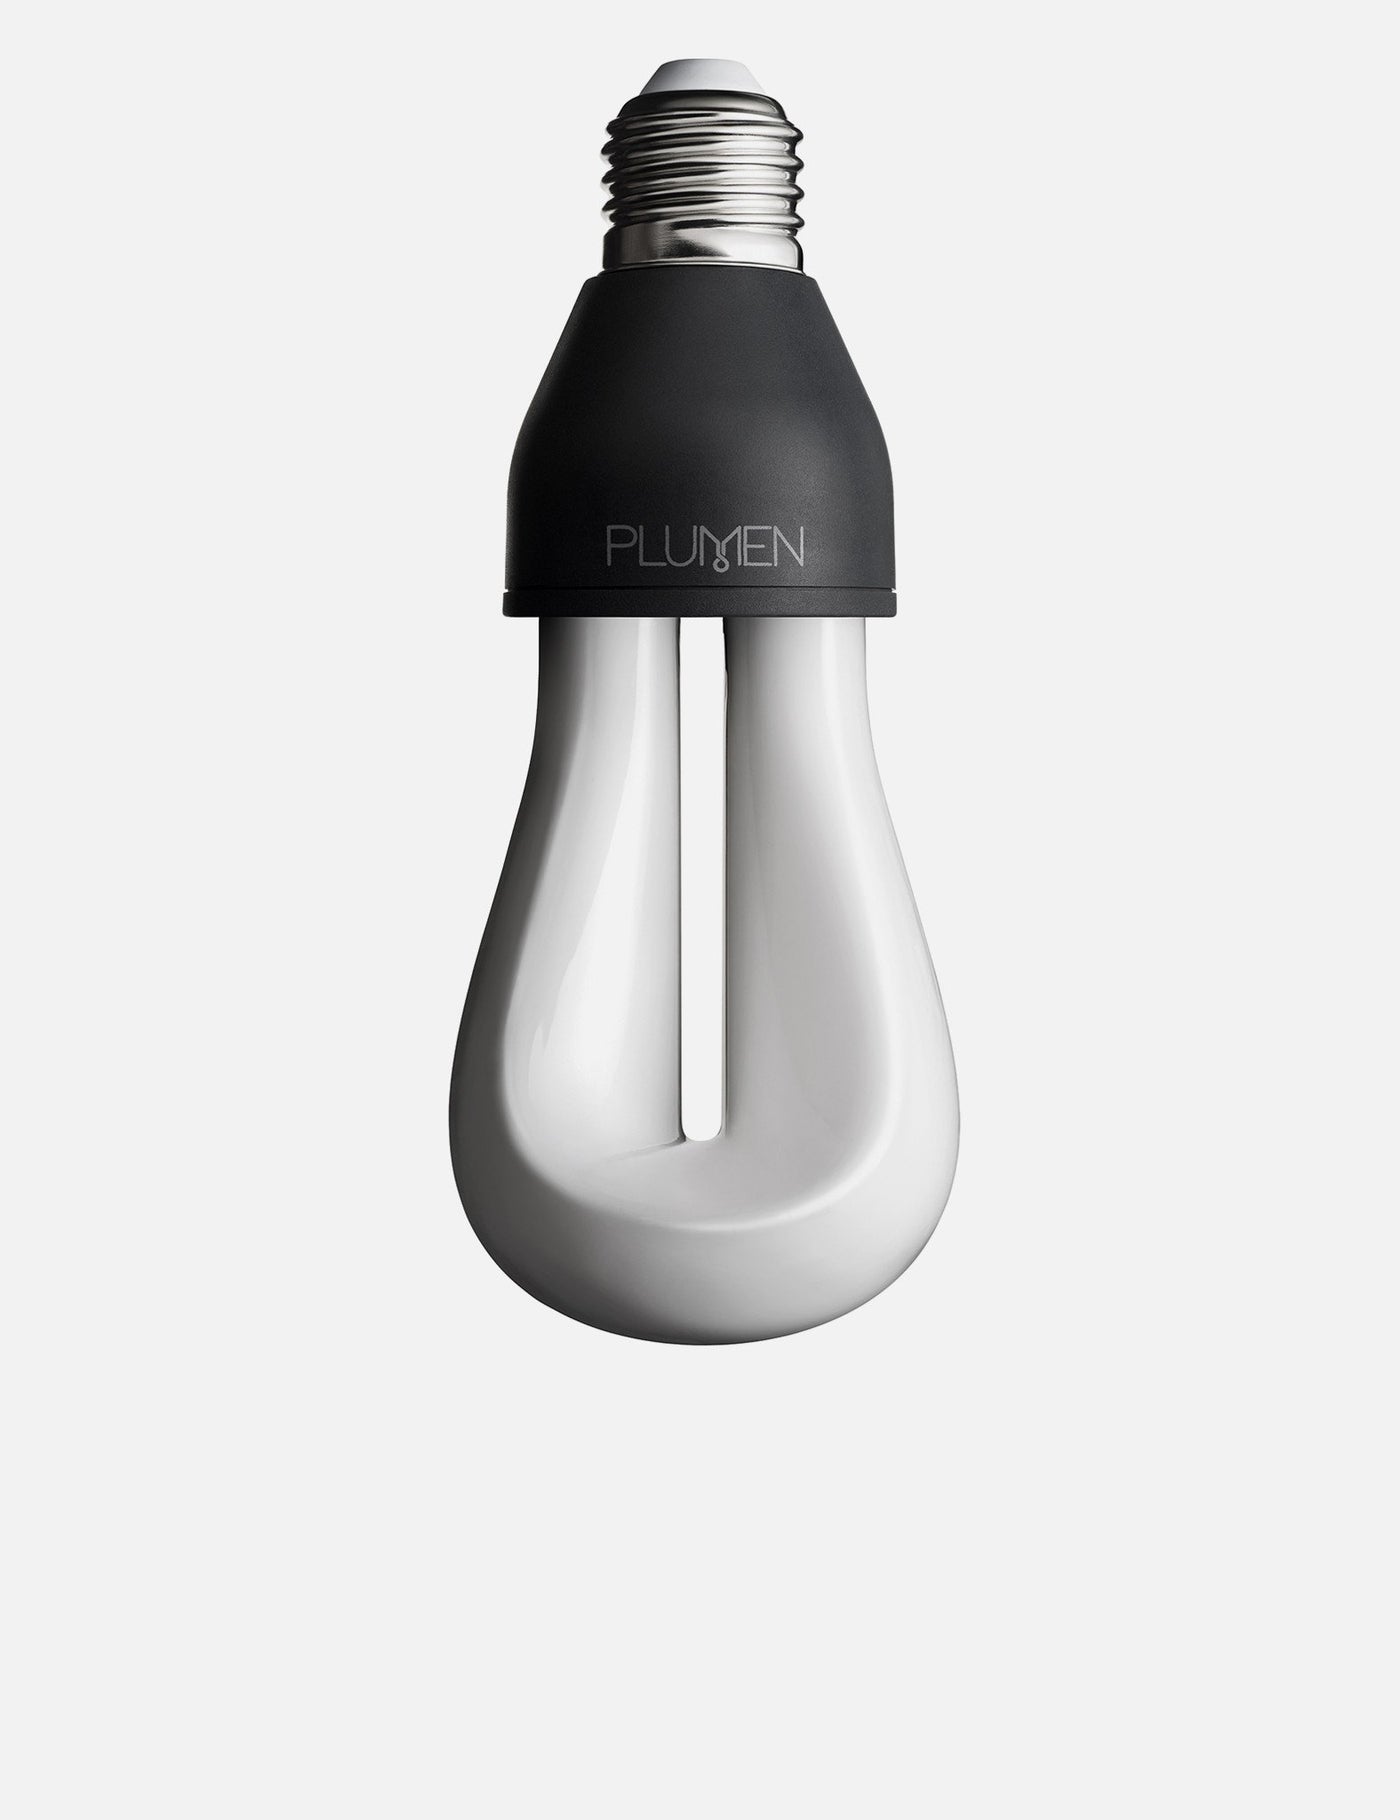 Original Plumen 002 LED + Drop Cap Set